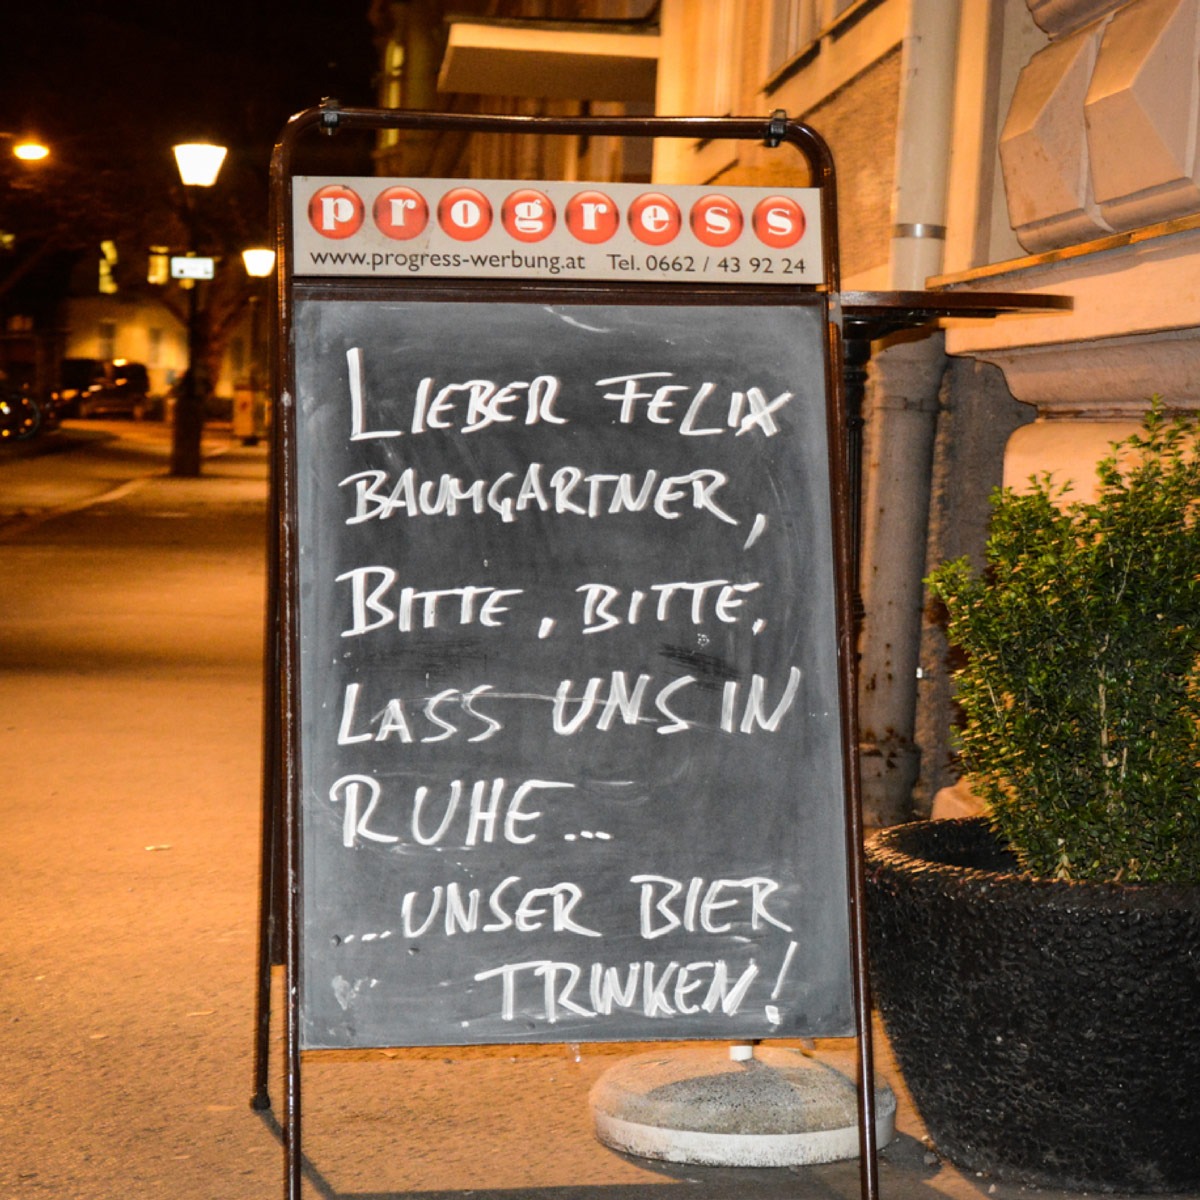 Lieber Felix Baumgartner, Bitte, Bitte, Lass Uns In Ruhe ... Unser Bier Trinken!